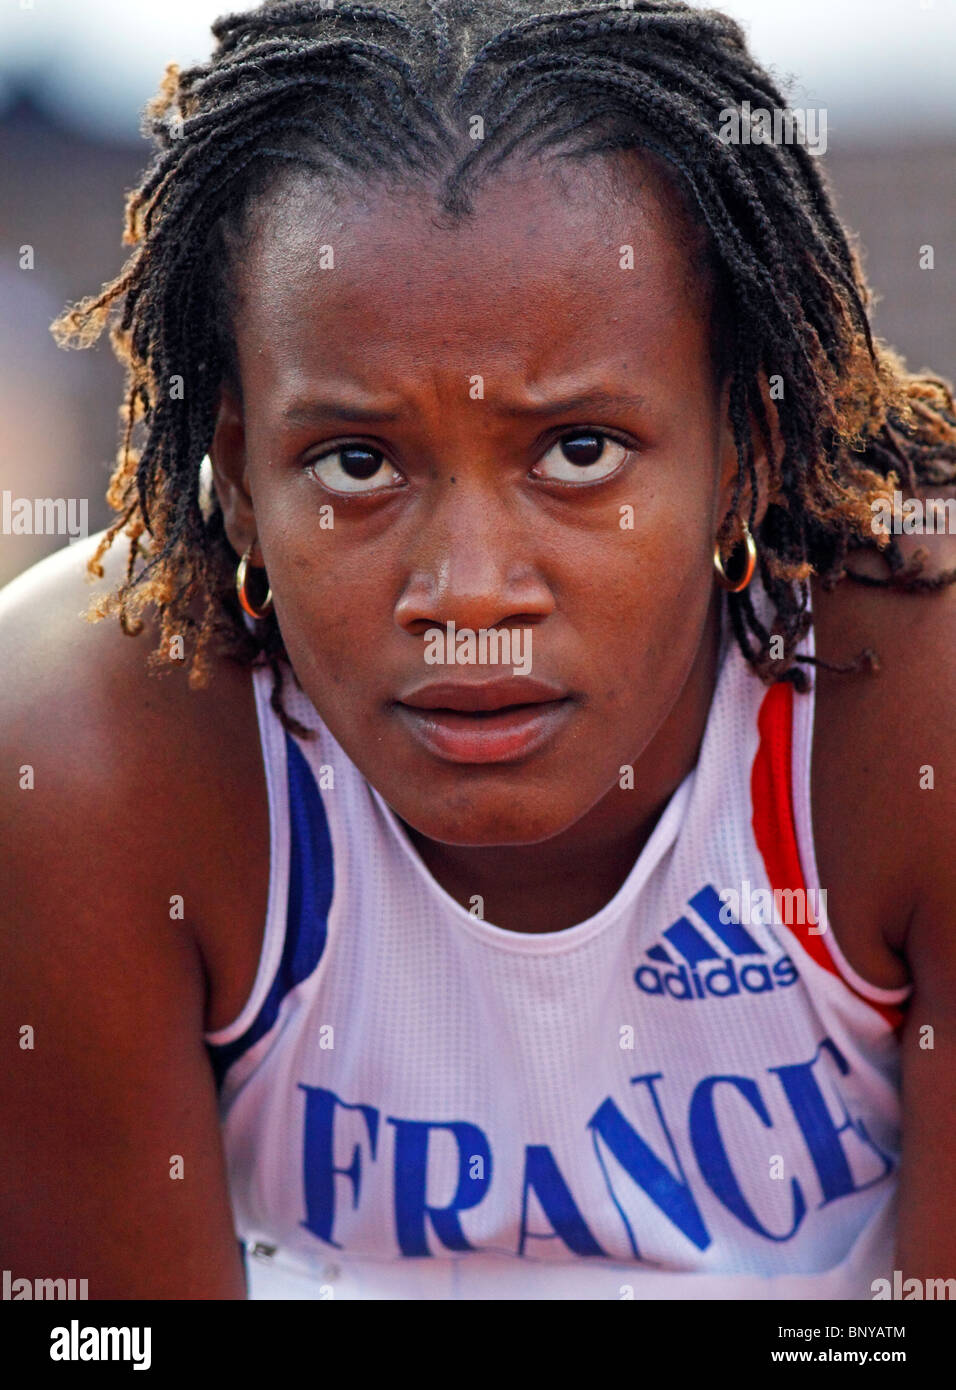 Jessica Alcan de France vous attend son temps dans les 100 mètres haies aux Championnats du monde junior de l'IAAF de 2010 le 21 juillet 2010. Banque D'Images